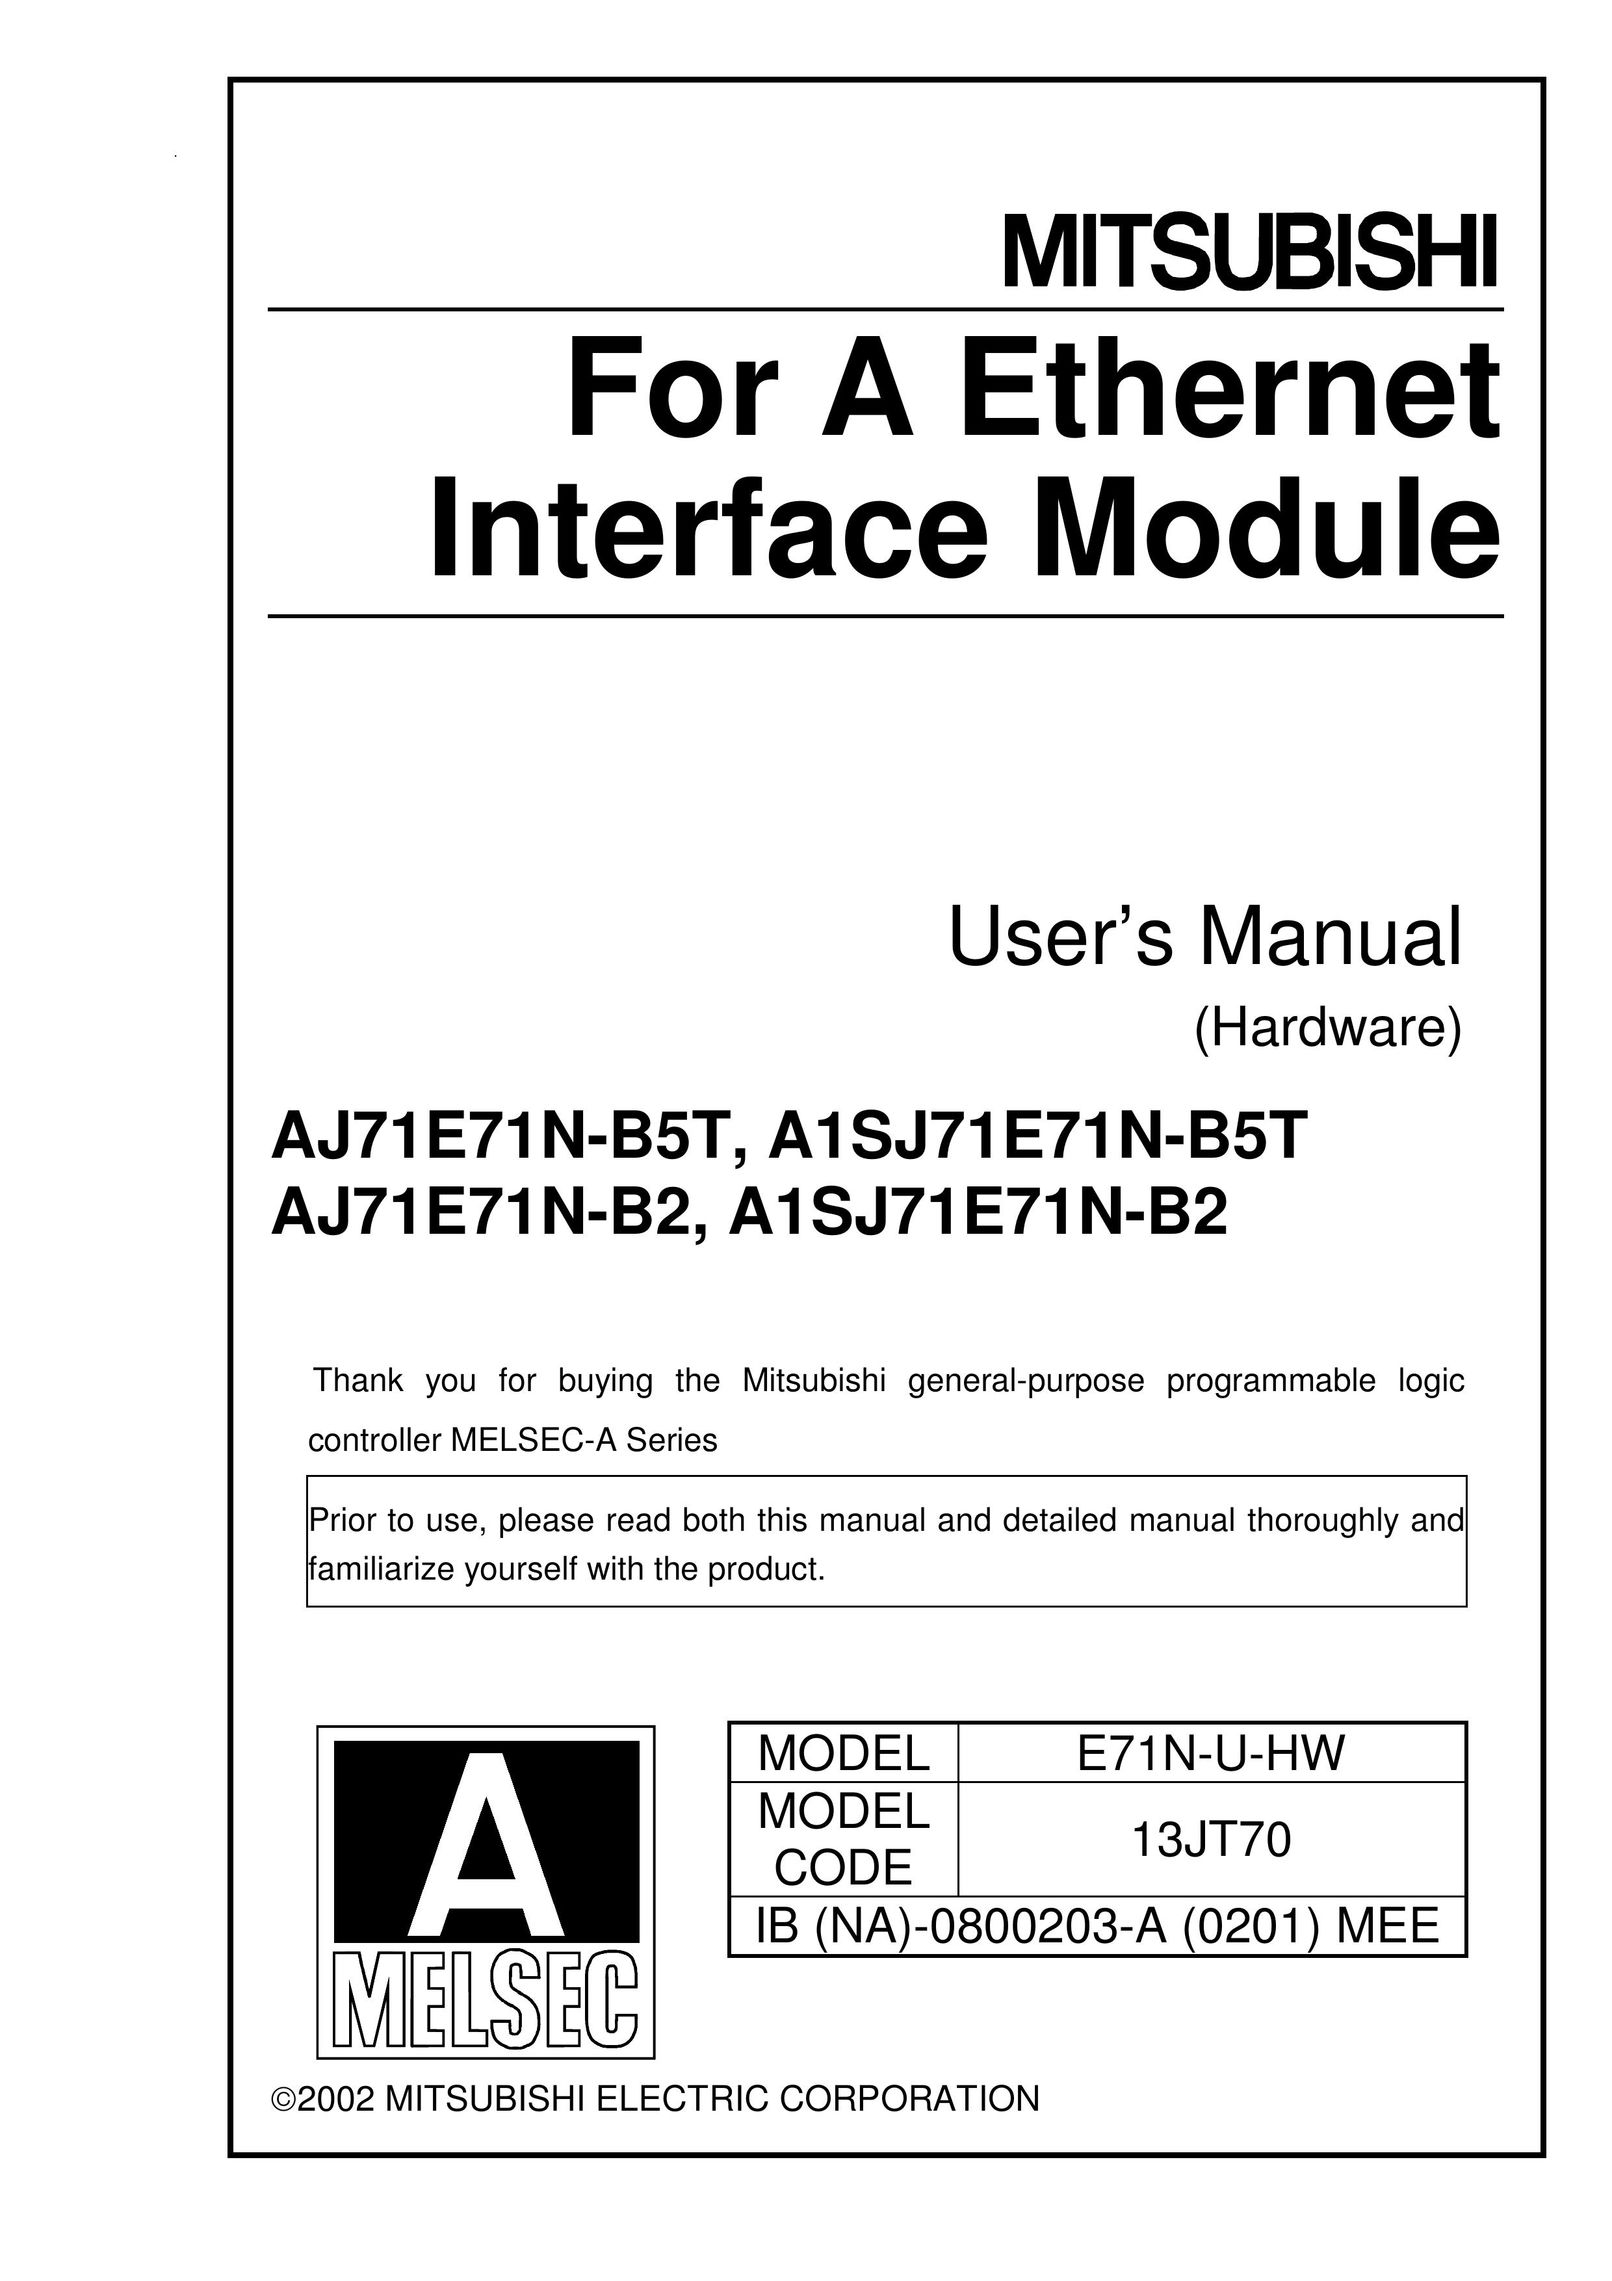 Mitsubishi A1SJ71E71N-B5T Network Card User Manual